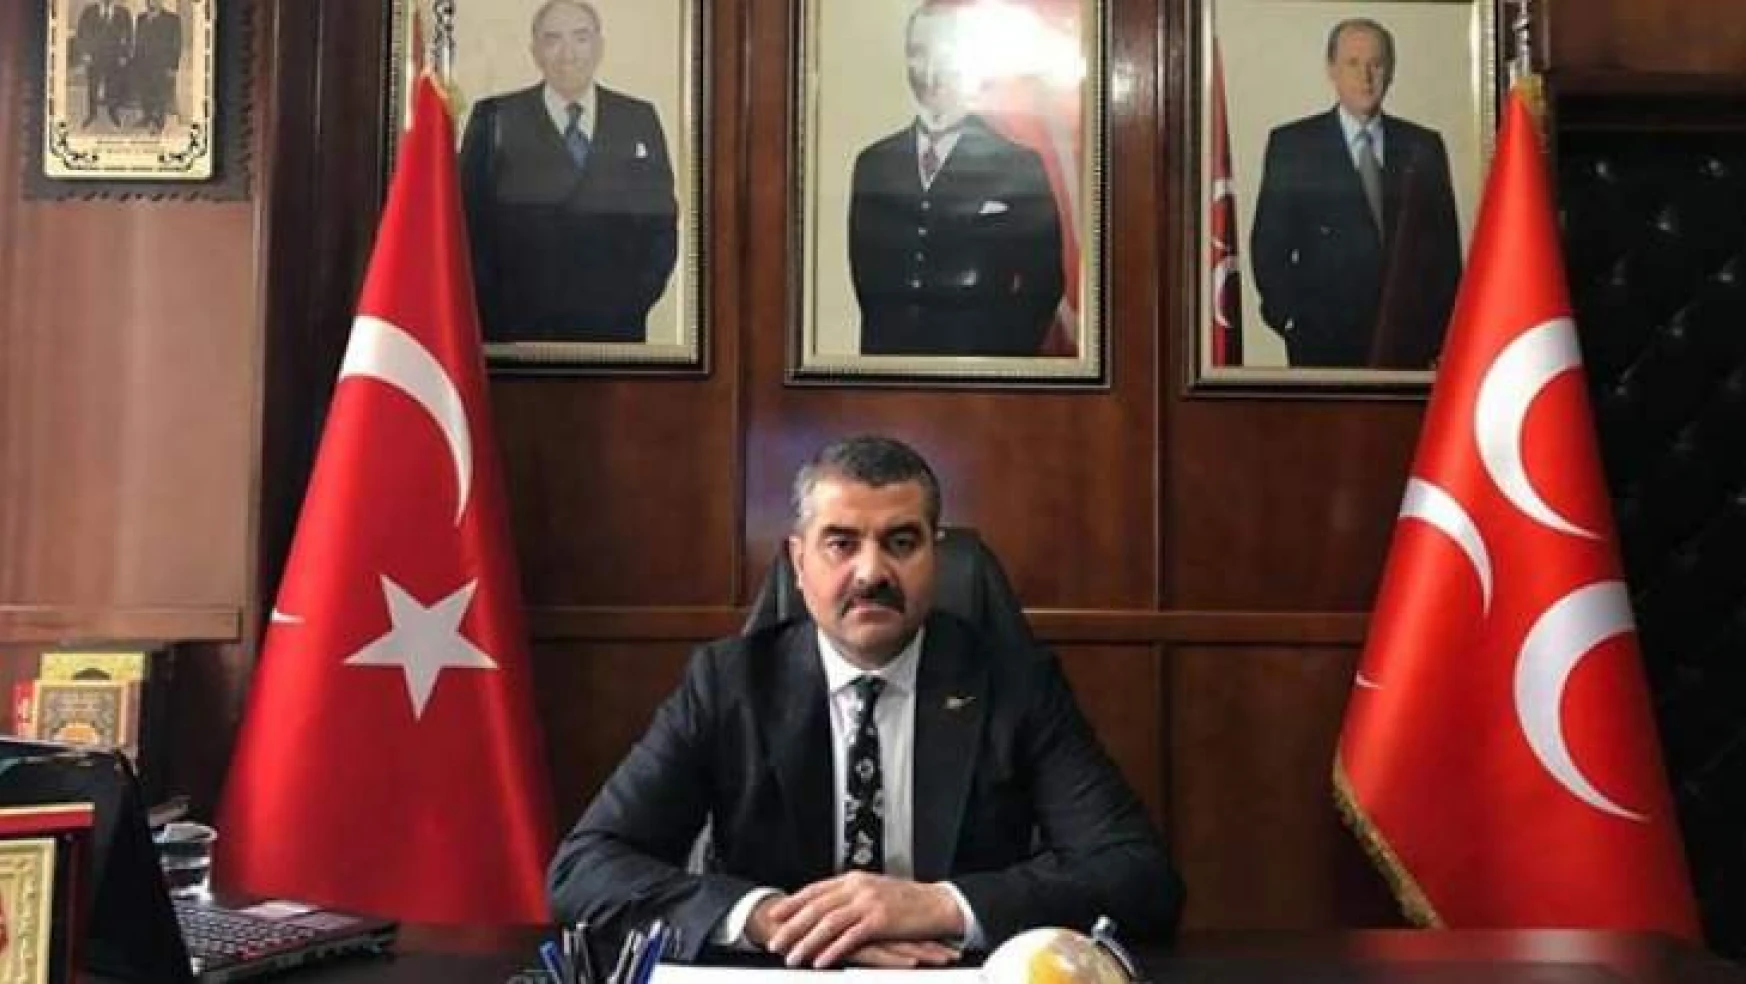 Başkan Avşar, 'M.Akif Ersoy Vatan Sevgisi İle Millete Örnek Olmuştur'